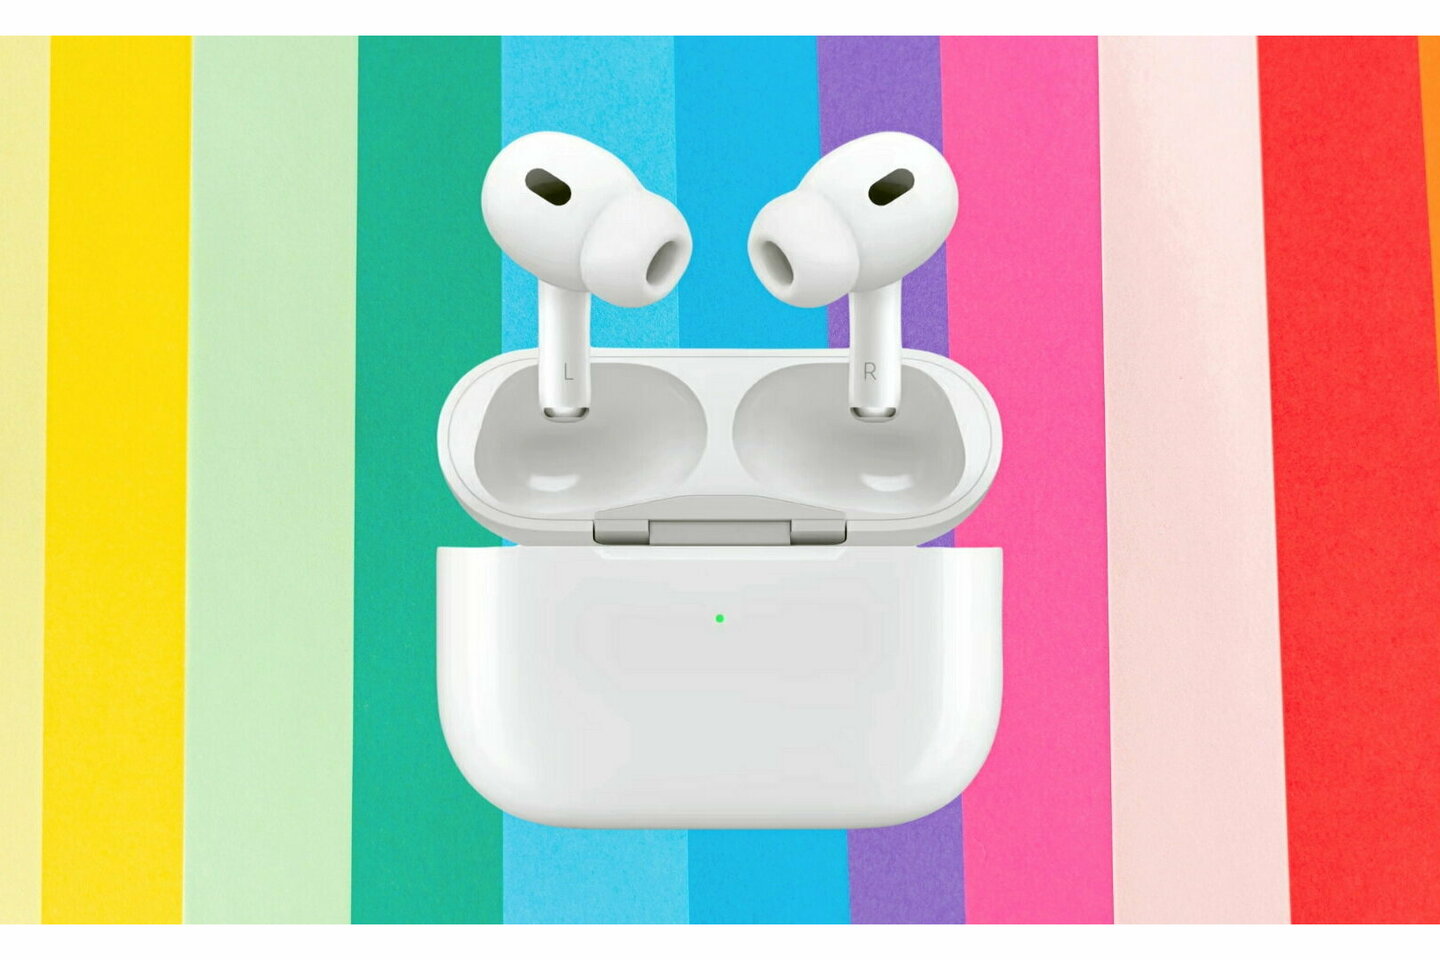 AirPods Pro 2 : baisse de prix fulgurante sur les écouteurs Bluetooth Apple